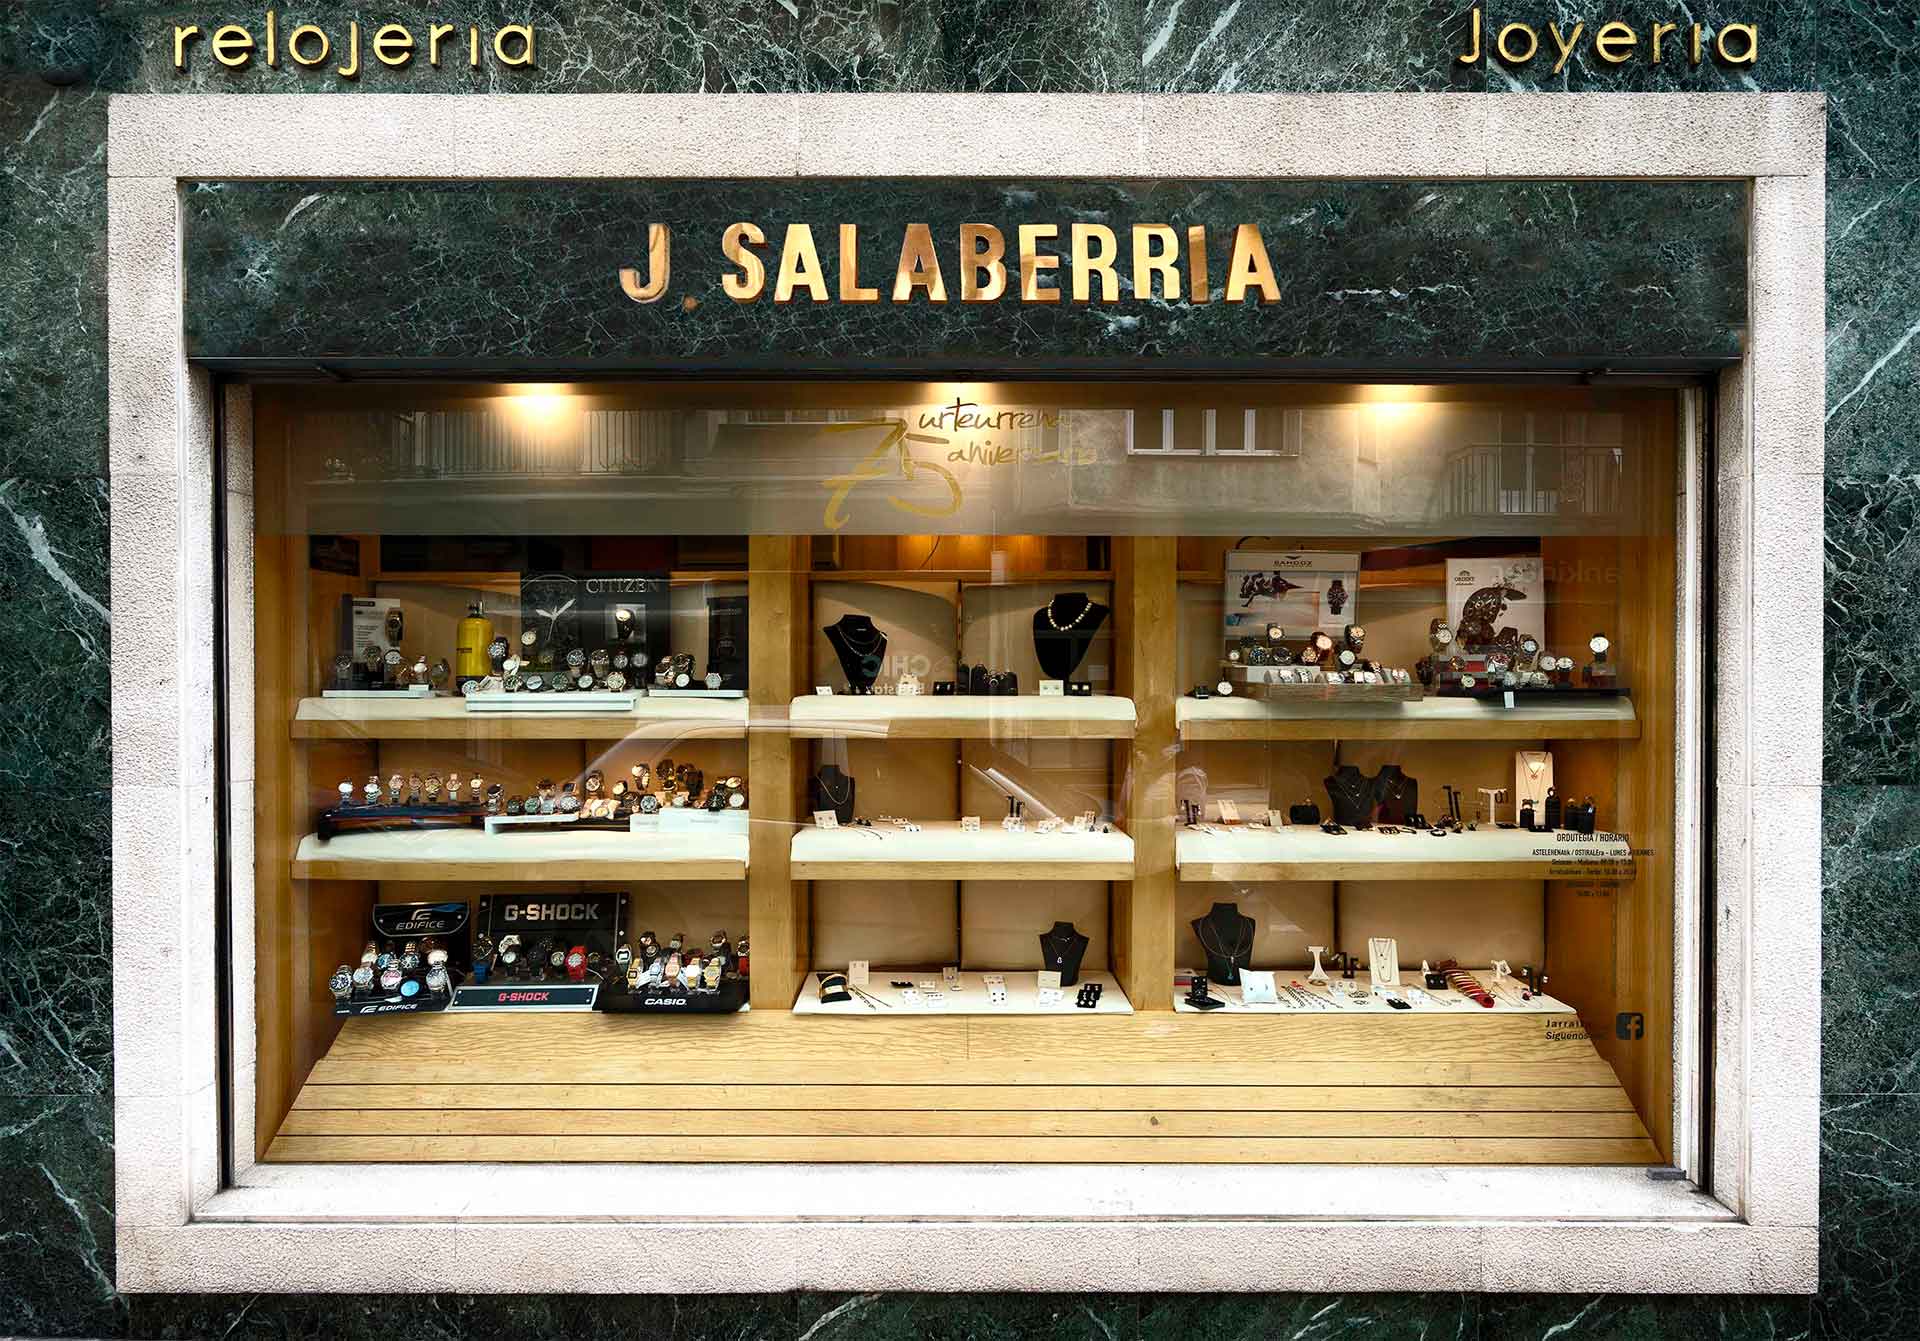 Joyería Relojería Salaberria de Eibar, desde 1943 dando el mejor servicio en joyas y relojes